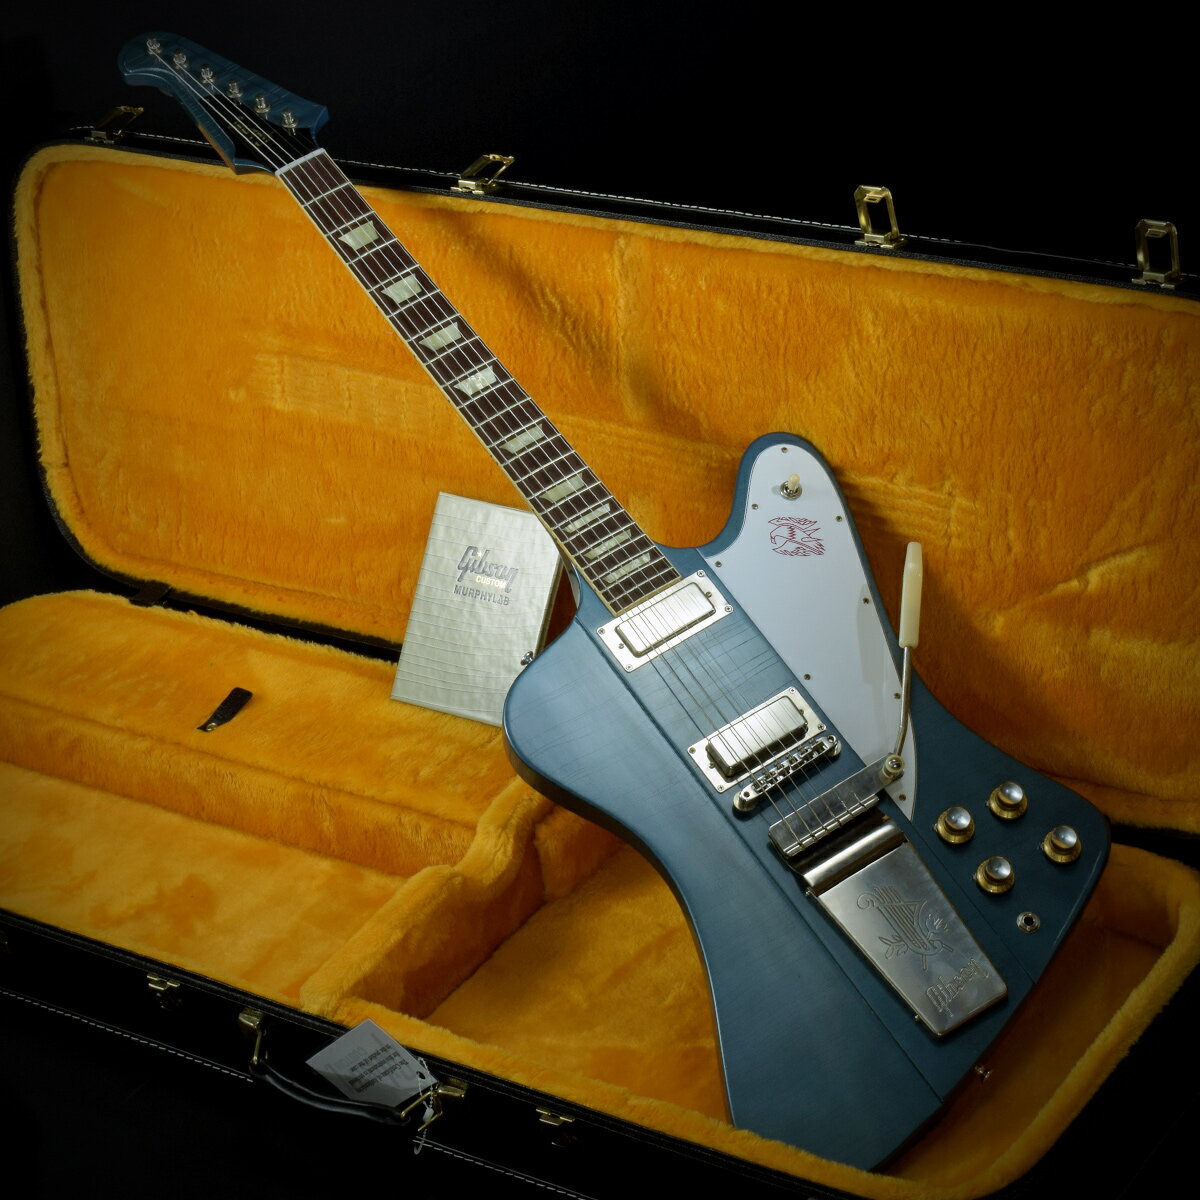 「Murphy Lab Collection」の「1963 Firebird V w/Maestro Vibrola Ultra Light Aged Pelham Blue」が入荷！ エイジングの渋さと鮮やかなブルーが印象的な「Pelham Blue」フィニッシュがクールな一本！ エイジングのレベルは「Ultra Light Aged」で、ウェザーチェック、ライトエイジド・ハードウェアといった経時変化によるオーセンティックなヴィンテージ・ギターのルックスを再現しております。 ネック・グリップはハイポジションにやや厚みのある「Authentic '63 Medium C-Shape」を採用し、Murphy Lab製品にのみ施される「ロールド・バインディング」により、ヴィンテージ特有のプレイ・フィーリングも再現している点も注目です！ ゴージャスなルックスも併せ持つこちらのファイヤーバード、是非ロックバンドでガッツリ鳴らして頂きたい一本です！ 主な仕様 Body Material : 9-ply Mahogany/Walnut Neck-Through Neck Material : 9-ply Mahogany/Walnut Neck-Through Neck Profile : Authentic '63 Medium C-Shape Scale Length : 24.75" / 628.65mm Fingerboard Material : Indian Rosewood, Hide Glue Fit Fingerboard Radius : 12" Number Of Frets : 22 Frets : Authentic Medium-Jumbo Nut Width : 1.69" / 42.85mm Hardware Finish : Nickel; Murphy Lab Light Aged Bridge : ABR-1 Tailpiece : Maestro Vibrola Tuning Machines : Deluxe Banjo Tuners Neck Pickup : Firebird Alnico 5 Bridge Pickup : Firebird Alnico 5 Controls : 2 Volume, 2 Tone, 500K CTS Potentiometers, Hand-Wired Harness Pickup Selector : 3-Way Switchcraft ■ シリアル : 302483■重量 : 3.89kg■JAN : 4580568419965 ■付属品 : 認定証、ハードケース、正規保証（要ユーザー登録） 複数のサイトに掲載しておりますため、他のサイトにて既にご販売済みである場合もございます。 売却に伴う商品情報の削除は迅速を心掛けておりますが、ご注文後に万一売り切れとなっておりました際は誠に申し訳ございませんがご容赦くださいませ。